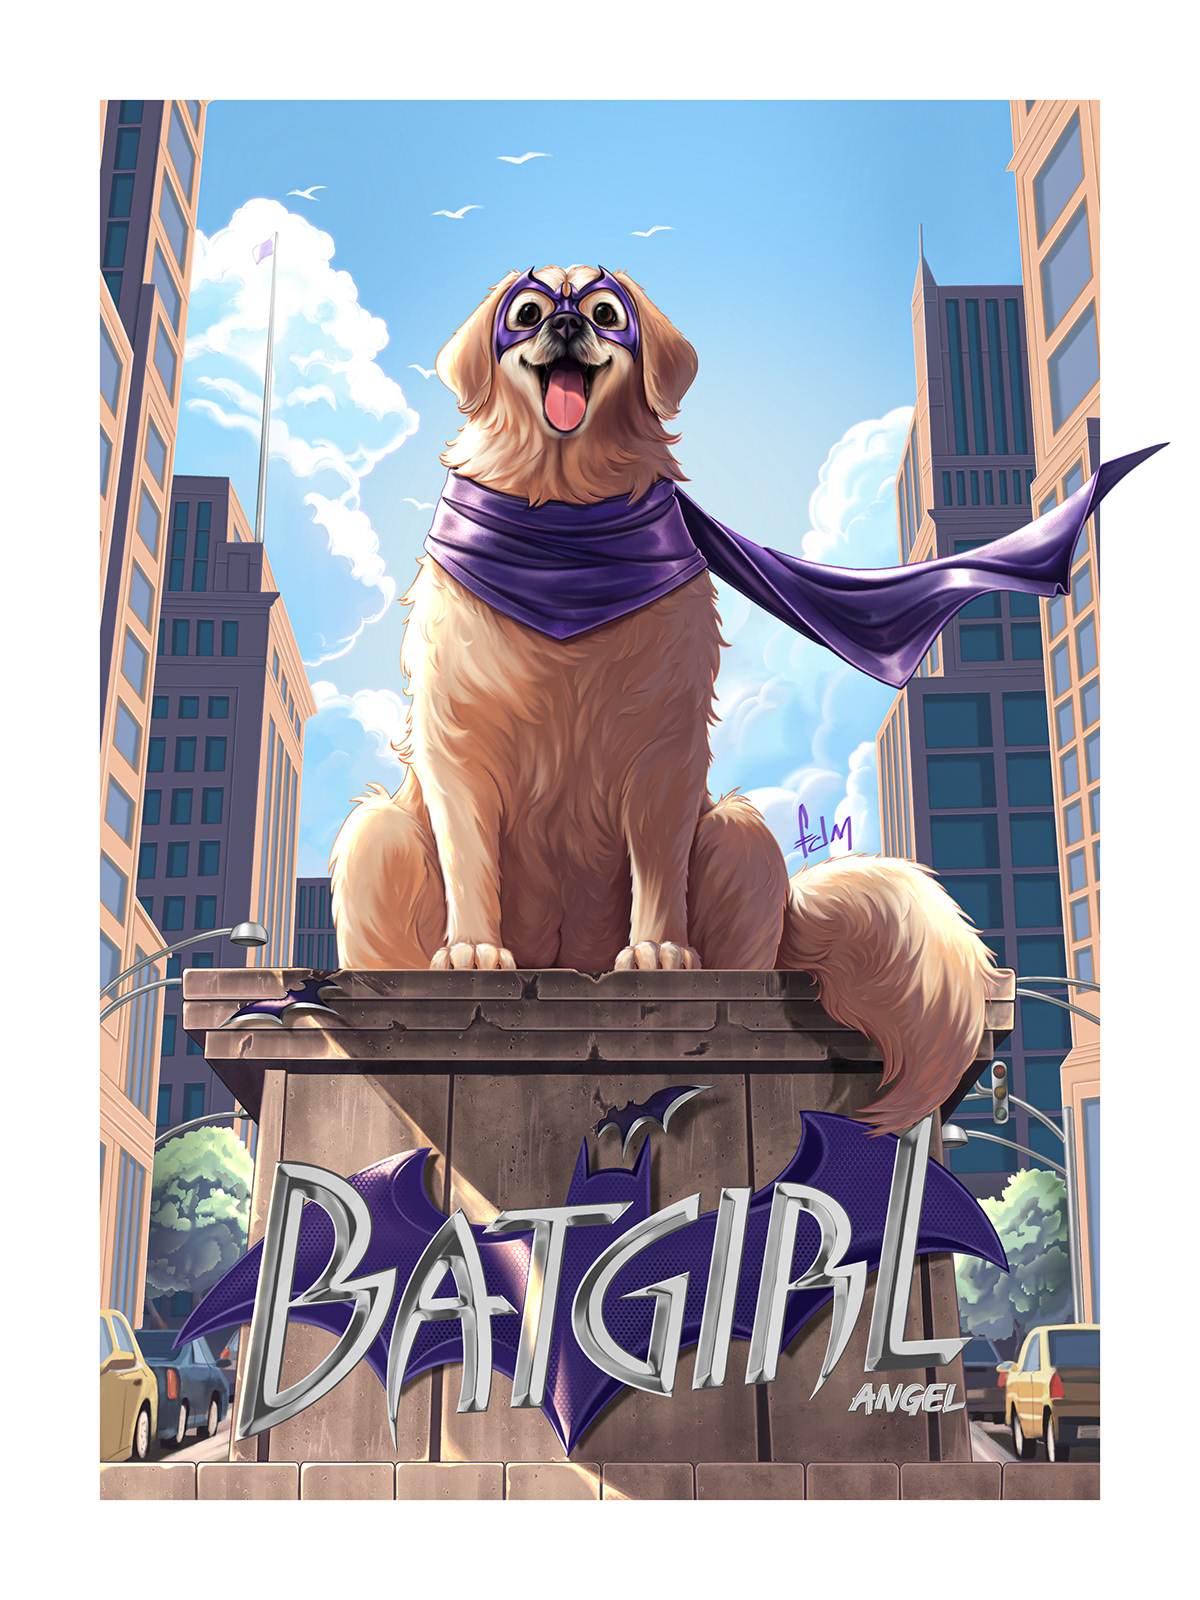 Batgirl Dc Comics batman comics Digital Art  ILLUSTRATION  puppy дог Adobe Portfolio